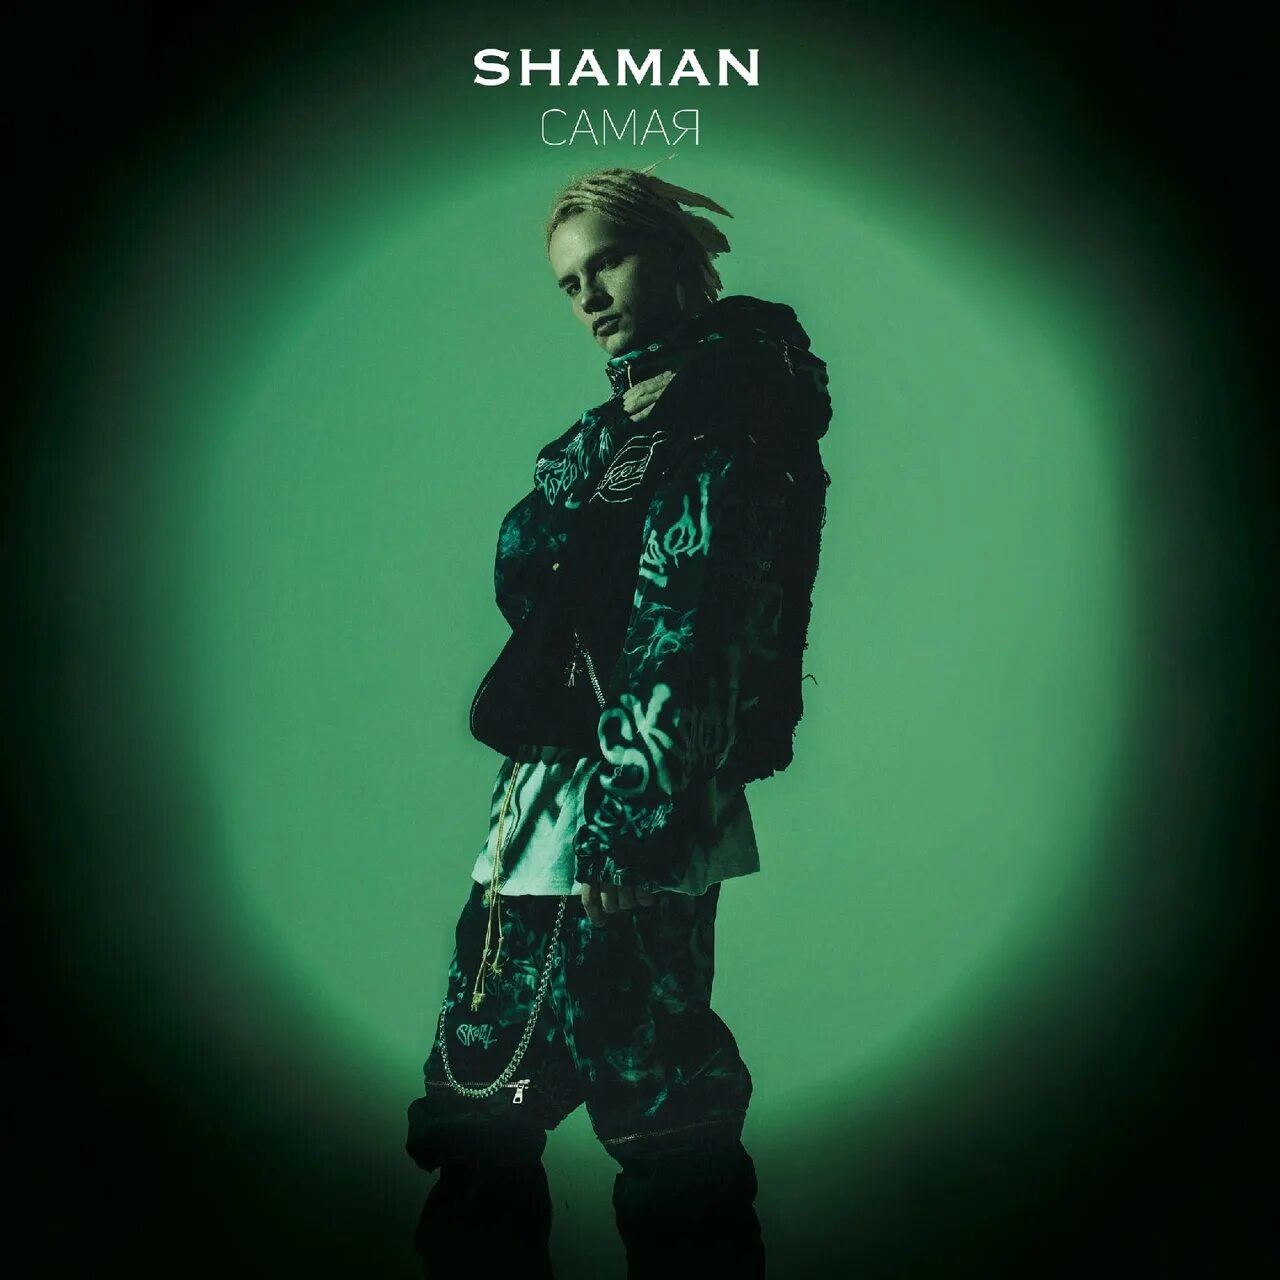 Shaman (певец). Shaman певец обложка. Самая Shaman. Shaman в молодости.